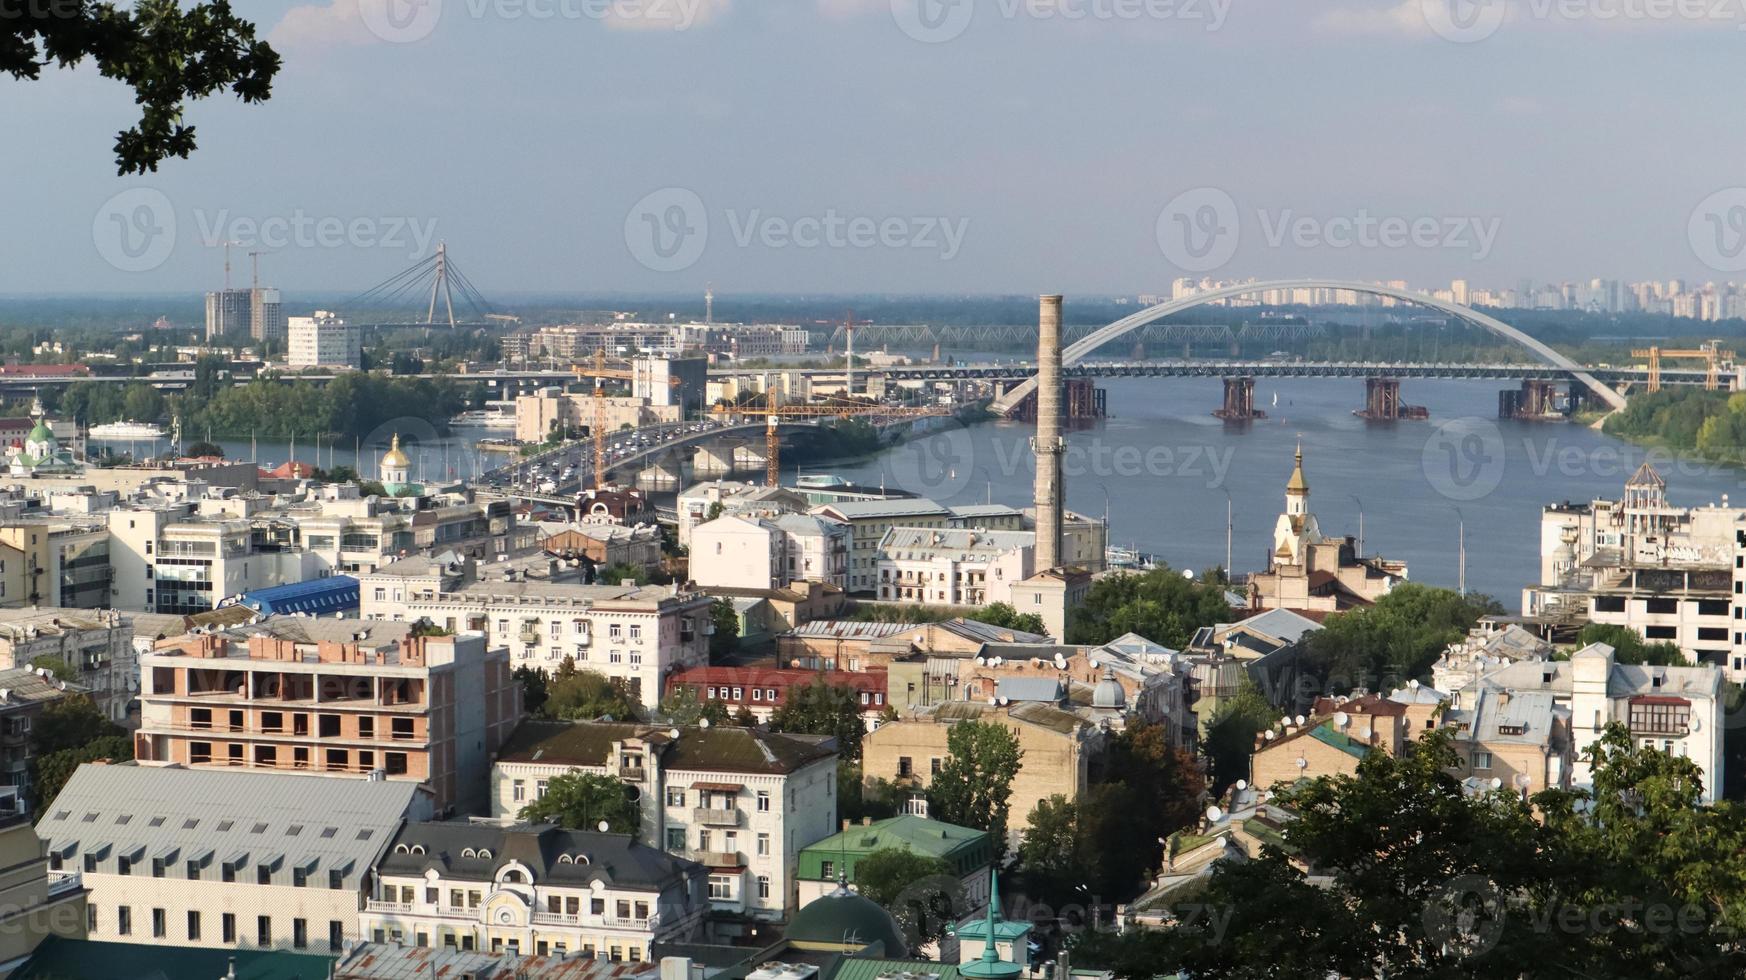 vista superior de la parte histórica antigua de la ciudad de kiev. área de vozdvizhenka en podol y el río dnieper desde el puente peatonal. hermoso paisaje de la ciudad. ucrania, kiev - 6 de septiembre de 2020. foto